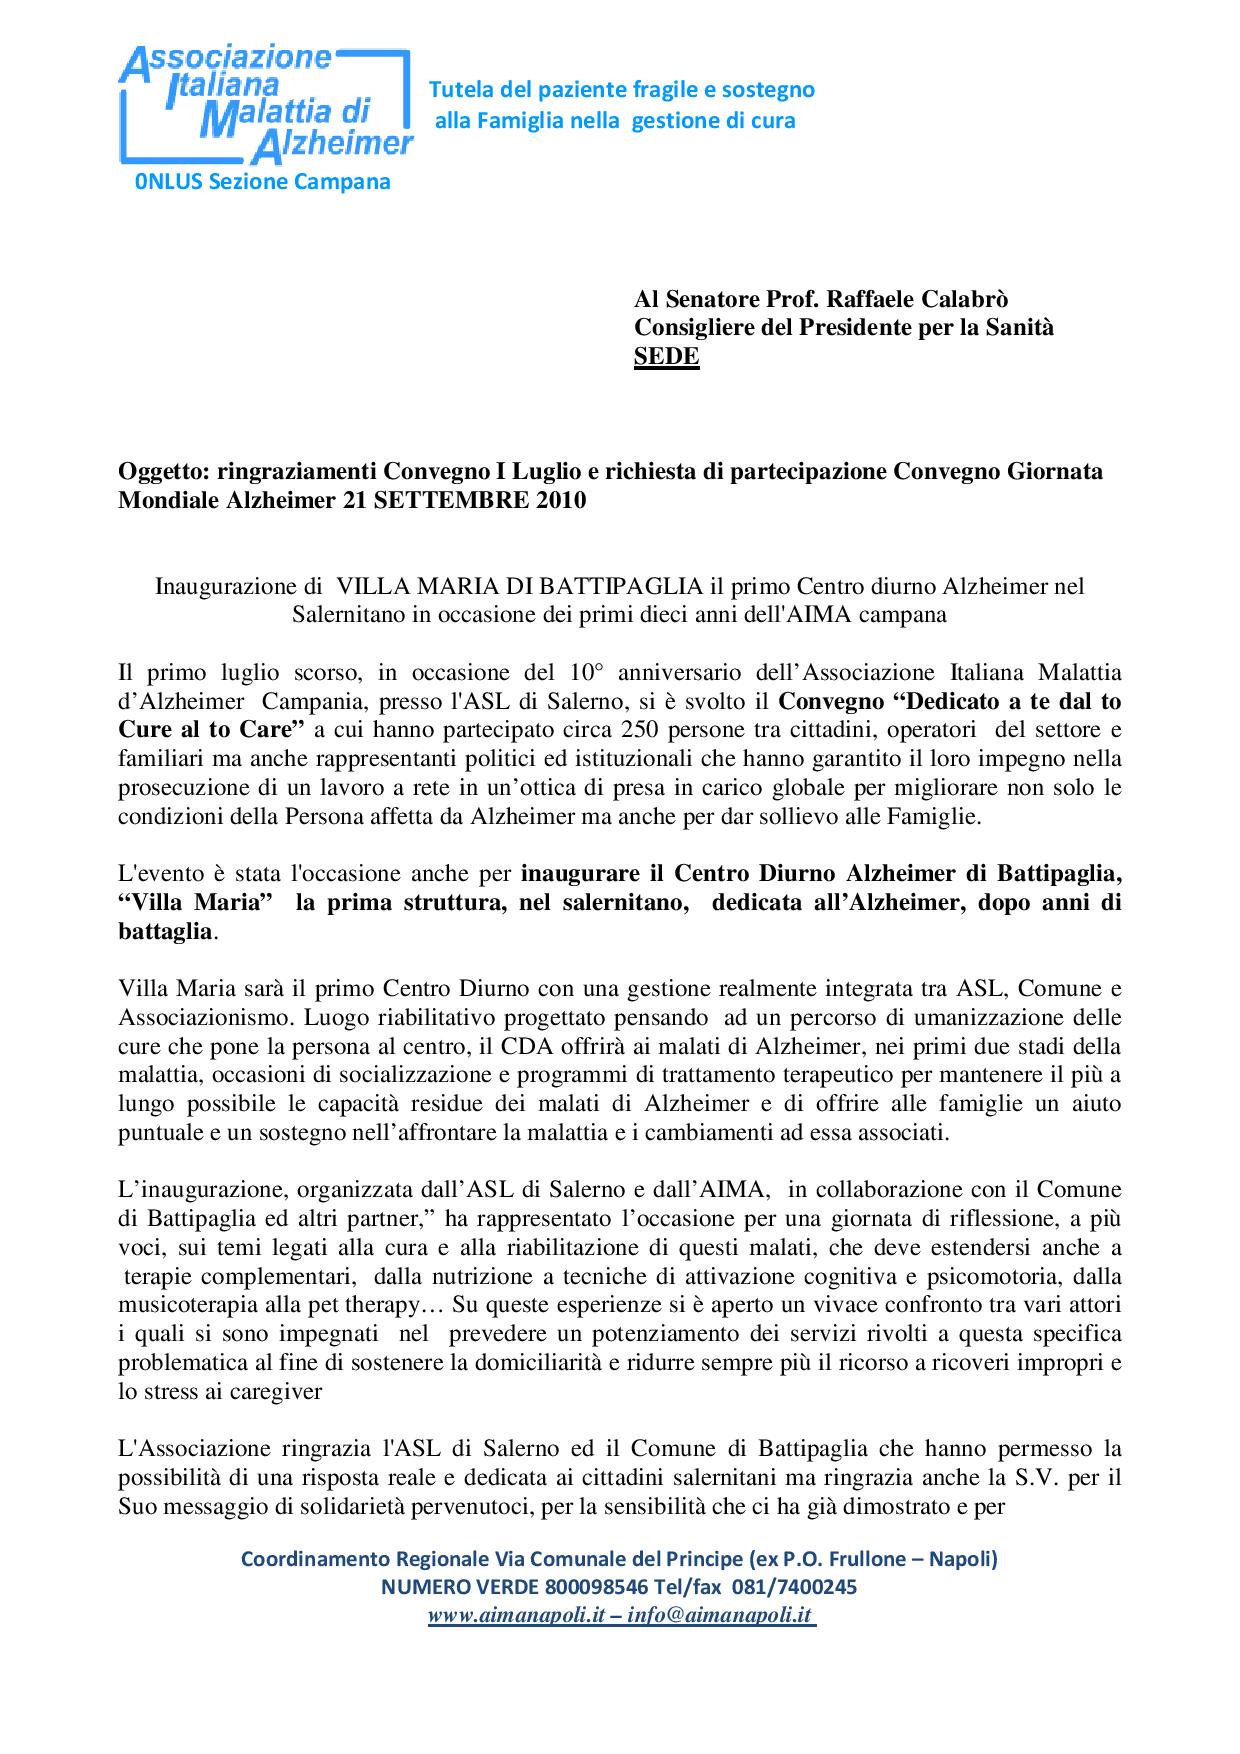 Senatore Calabrò per I luglio e GMA 2010-page-001